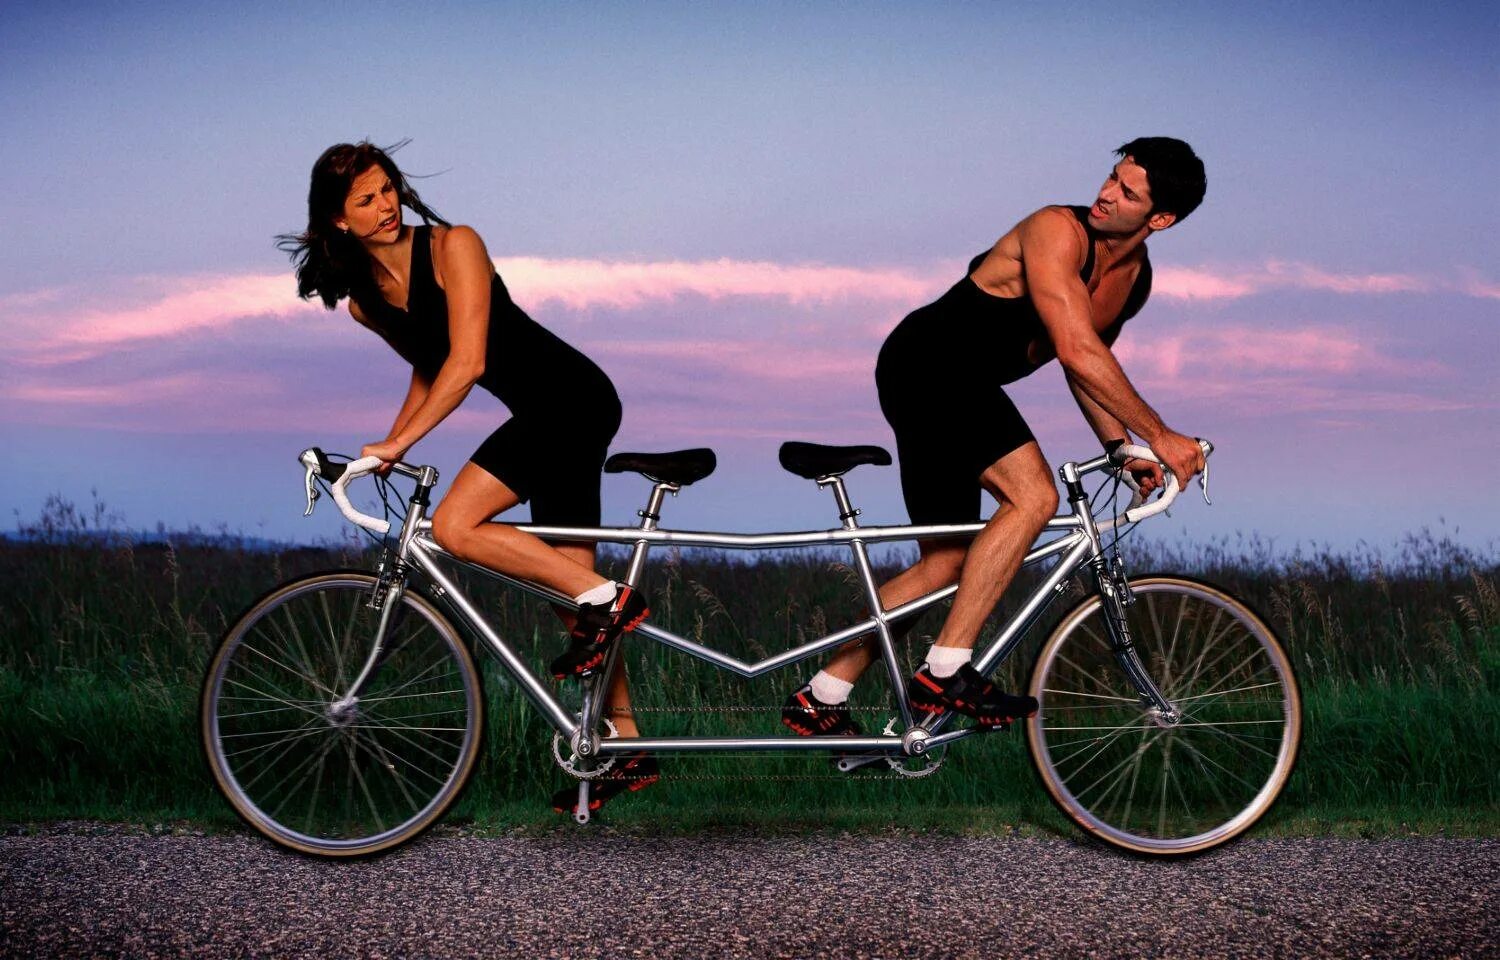 Связи которые просто есть. Мужчина иженшина на велосипеде. Парень с девушкой на велосипеде. Велосипед для двоих. Женщина на велосипеде.